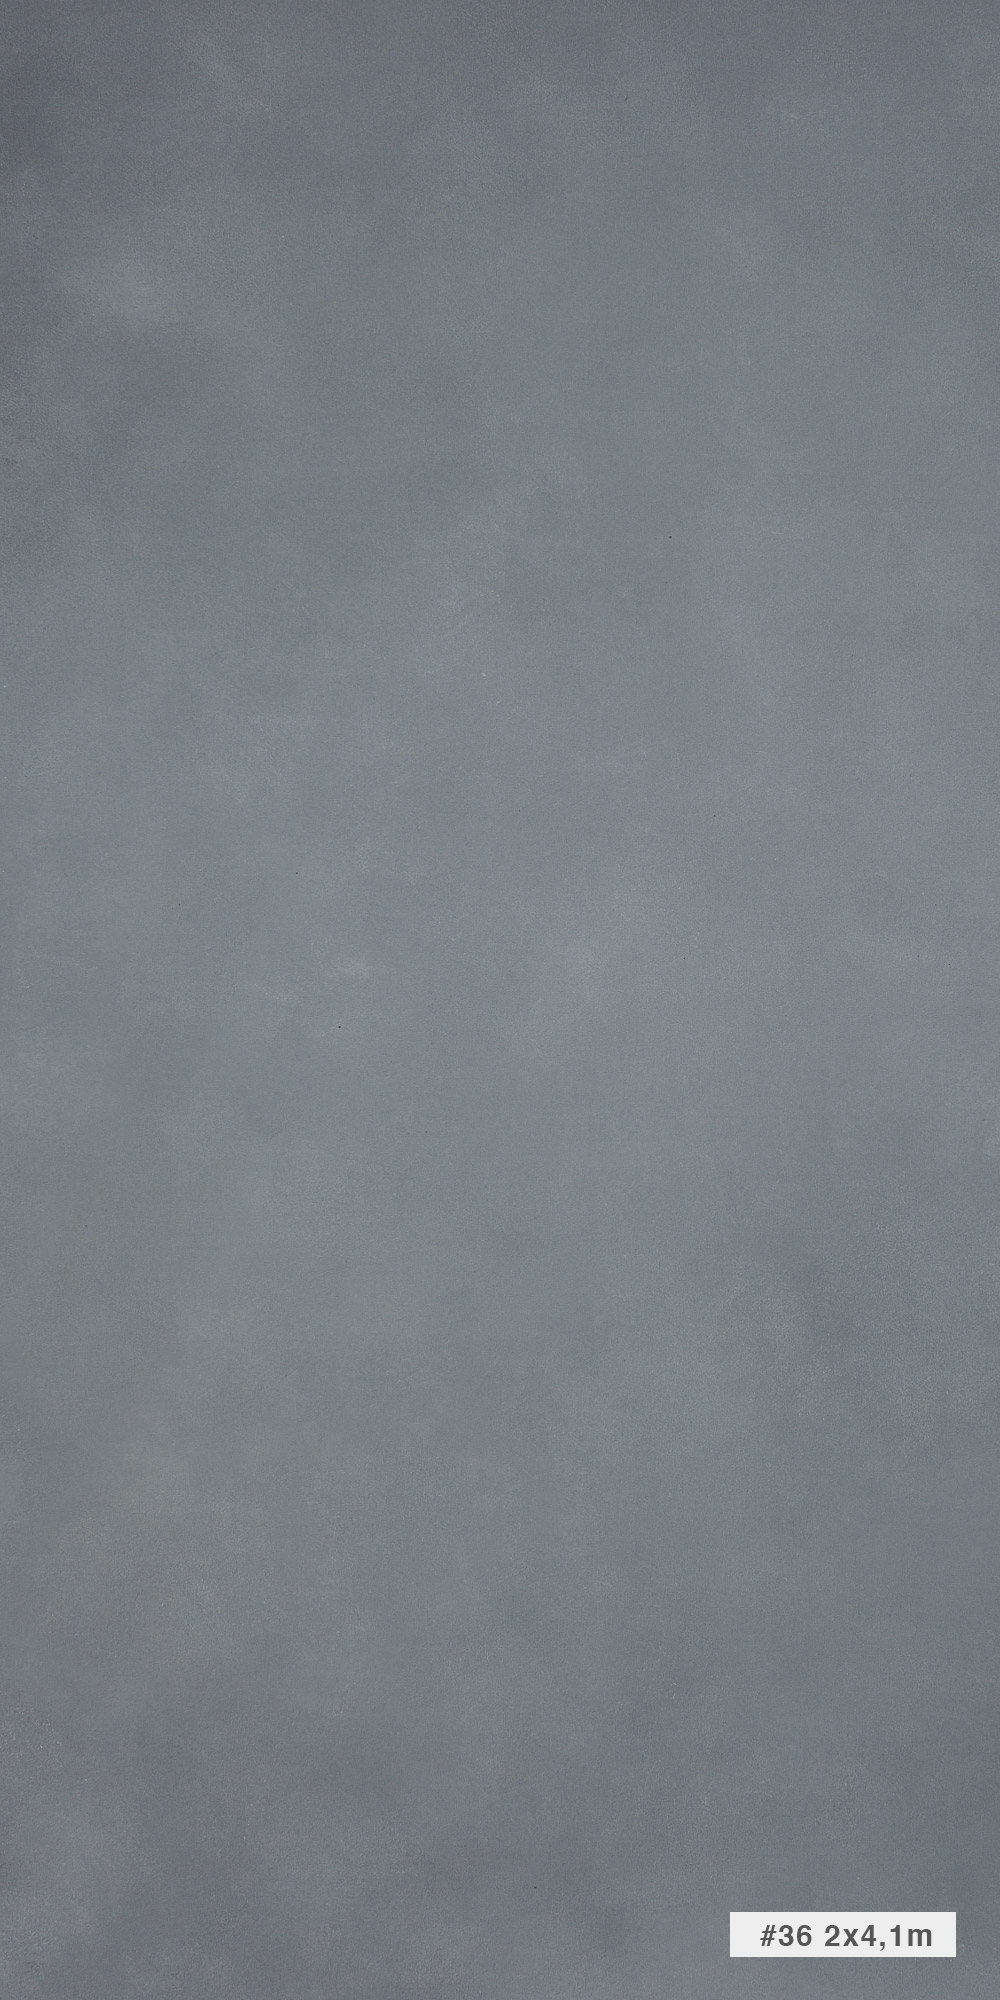 Художественный серый холодный фон для фото съемок